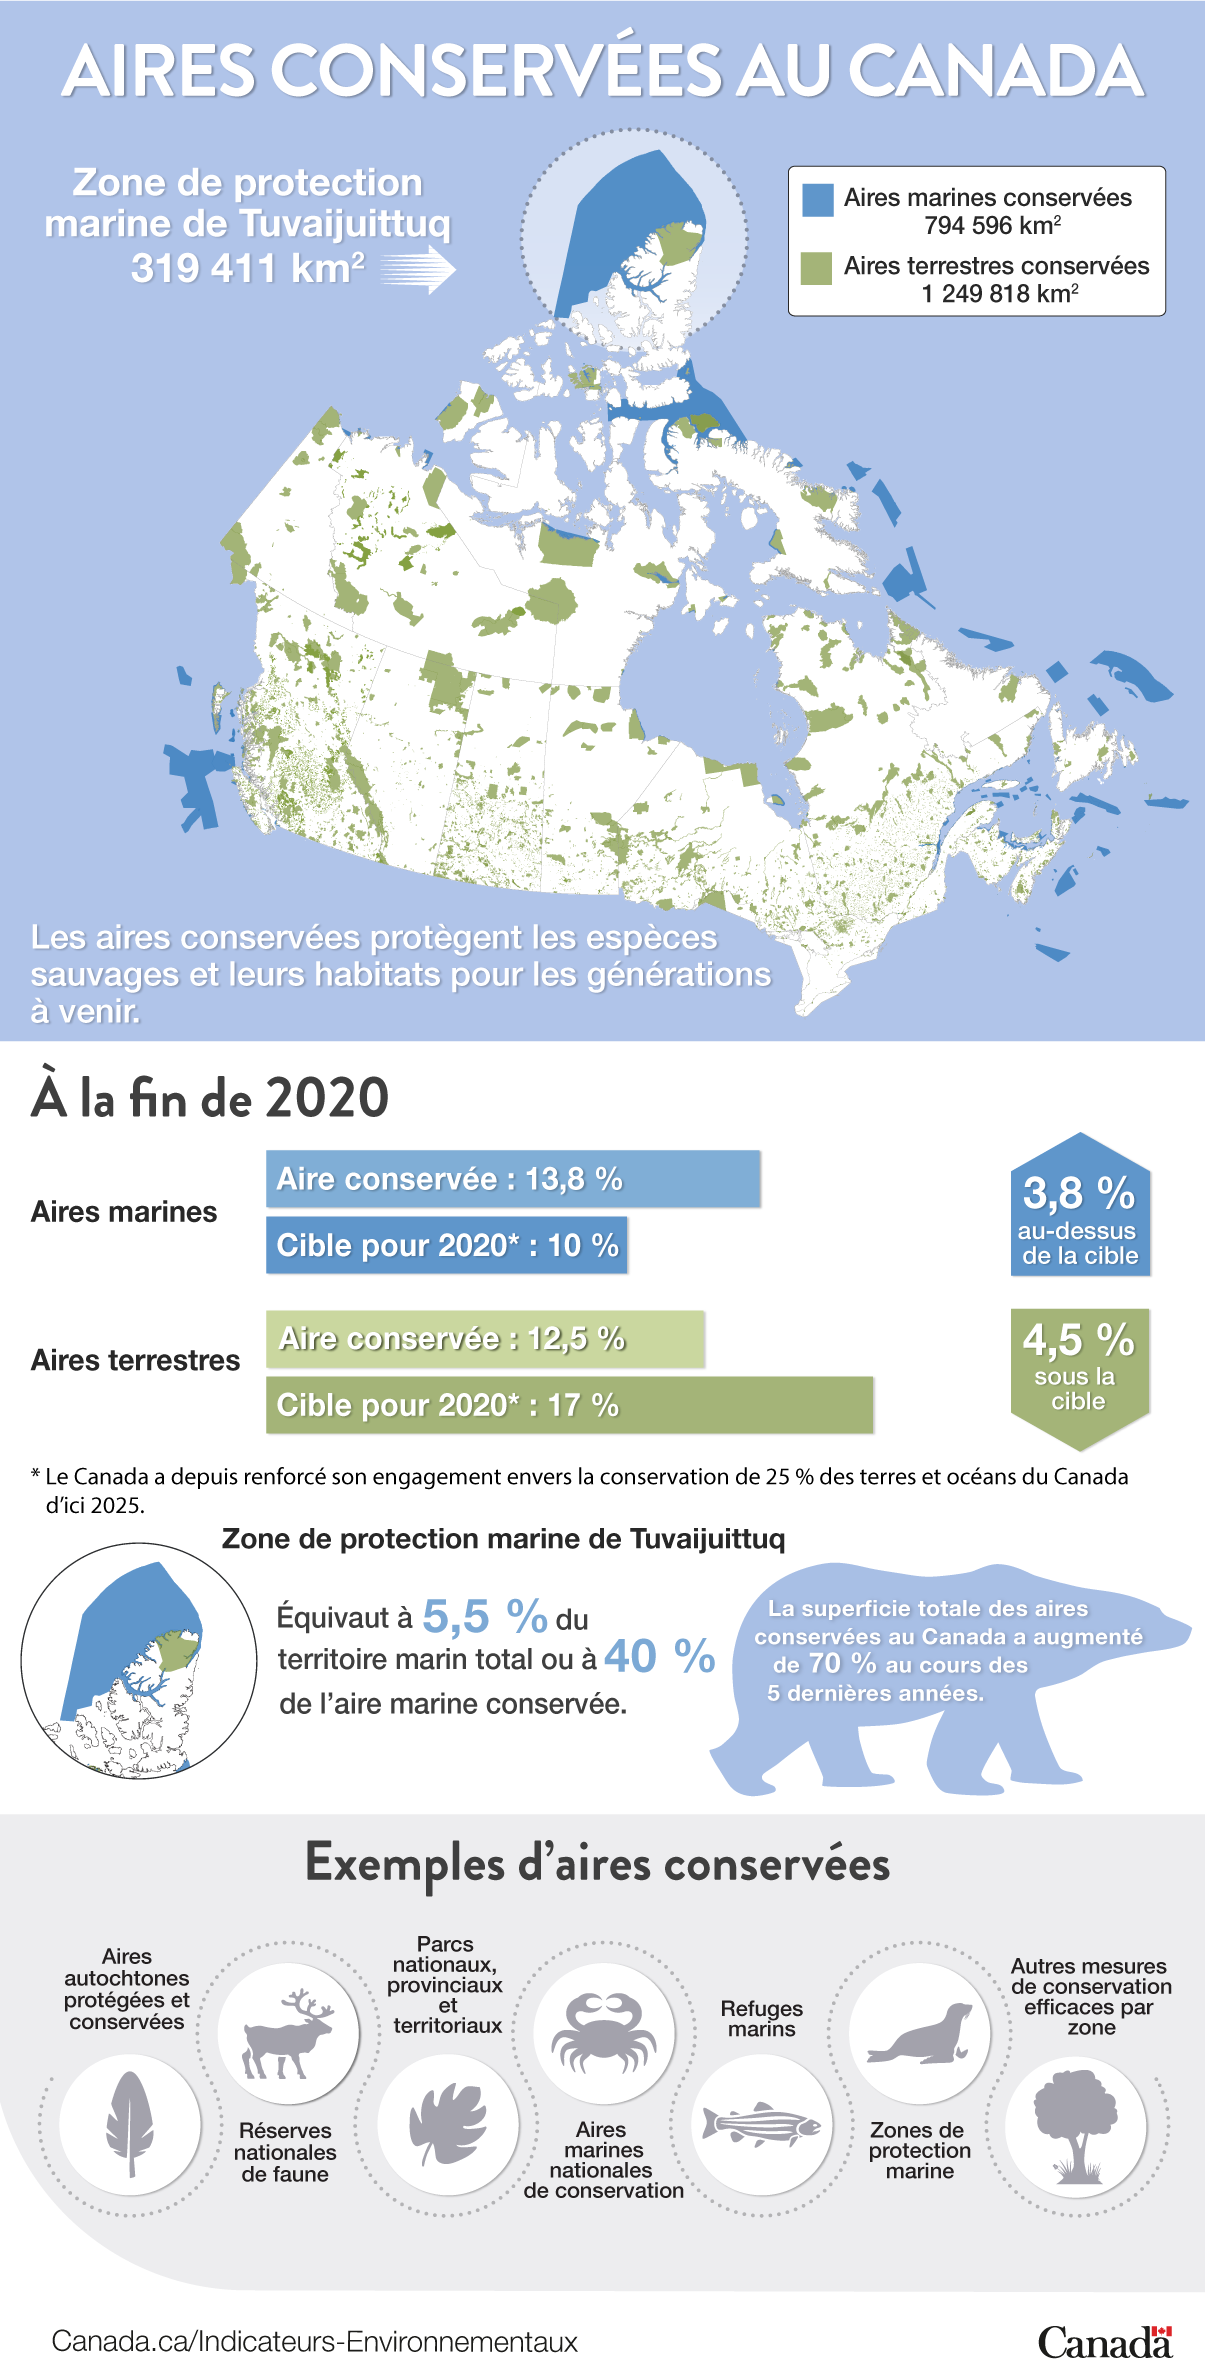 Cette infographie présente un bref aperçu des aires conservées au Canada et le progrès réalisé envers l’objectif de conservation de 25 % des terres et océans du Canada d’ici 2025.